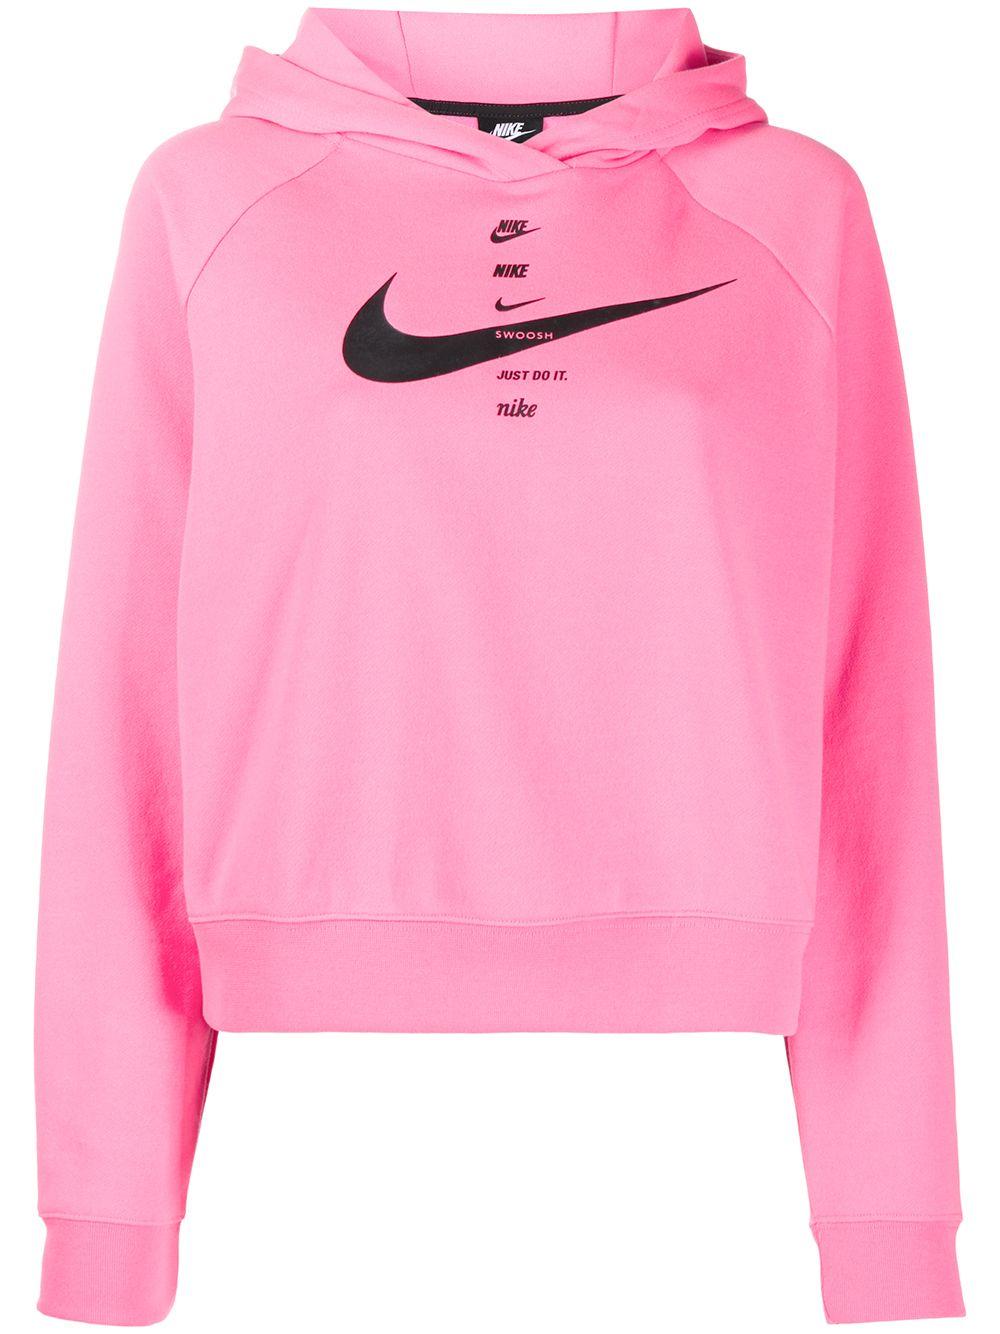 Nike Swoosh Hoodie (pink Glow) - Sale | Lyst